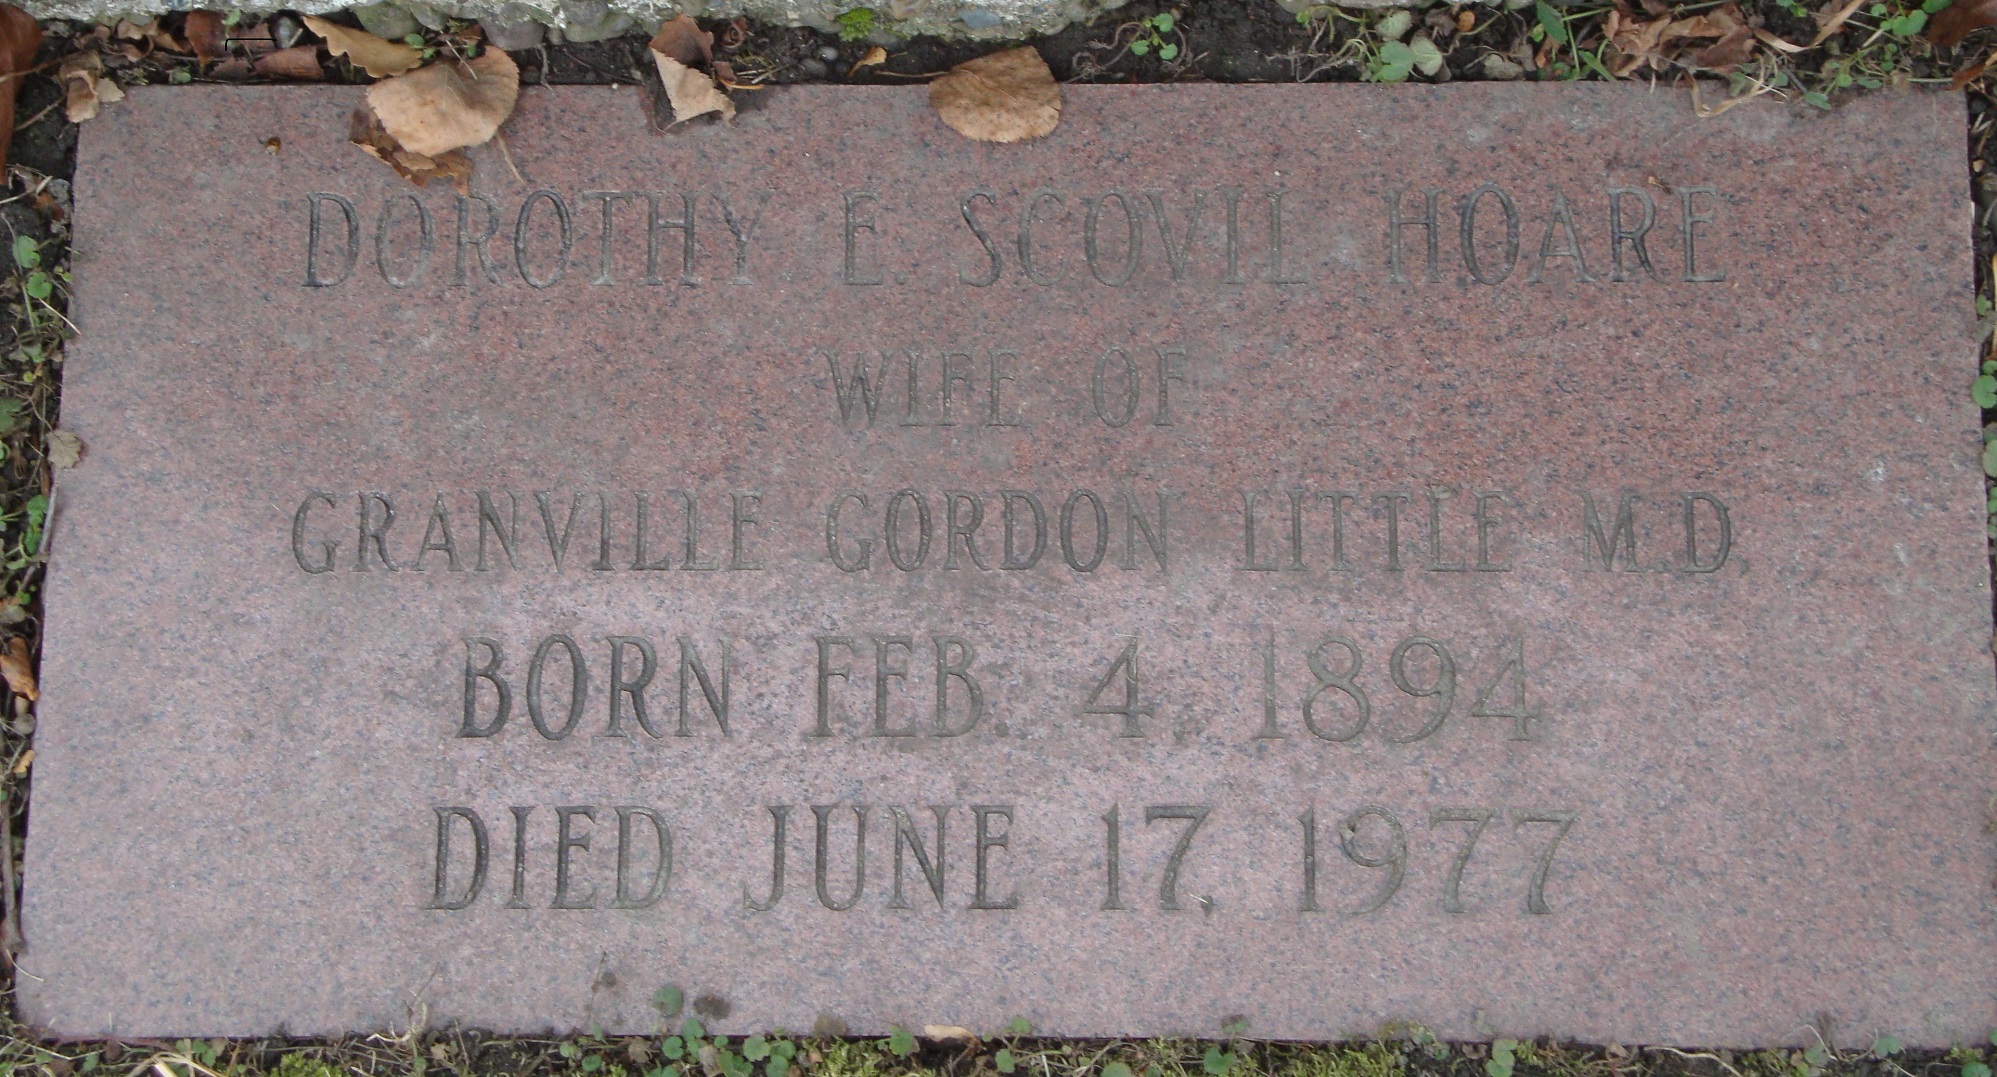 Dorothy E Scovil Hoare Little 1894-1977 - spouse Dr LITTLE